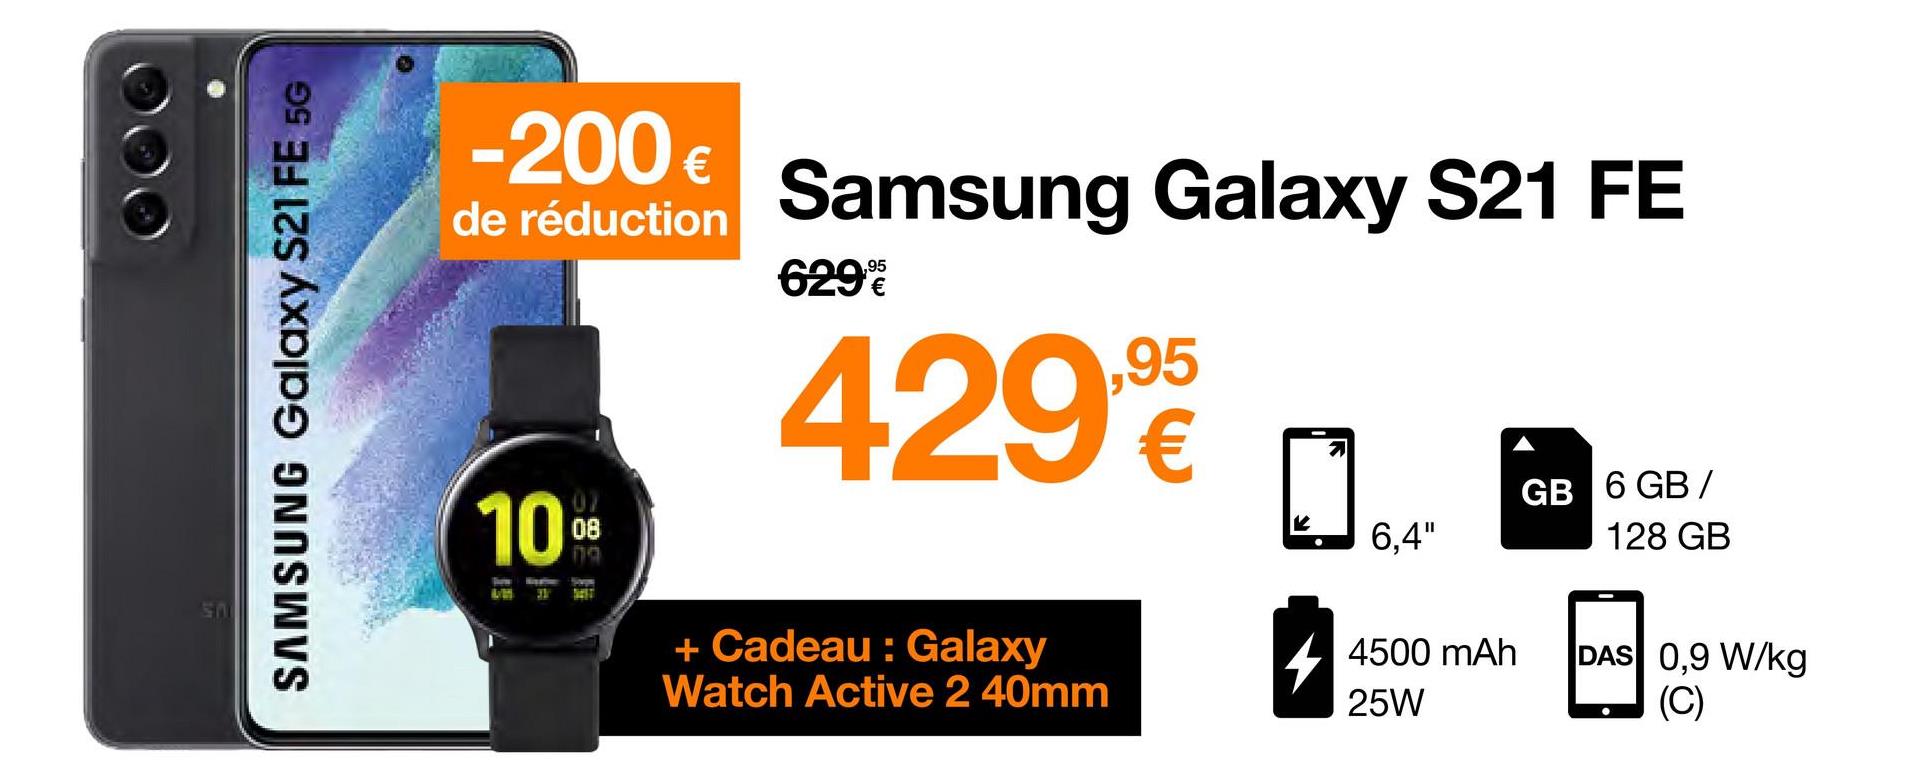 SAMSUNG Galaxy S21 FE 5G
-200 €
de réduction Samsung Galaxy S21 FE
429,90
10⁰⁰
08
Tarm
LM 31
Sopw
SEST
629%
+ Cadeau: Galaxy
Watch Active 2 40mm
6,4"
4500 mAh
25W
GB 6 GB/
128 GB
DAS 0,9 W/kg
(C)
●